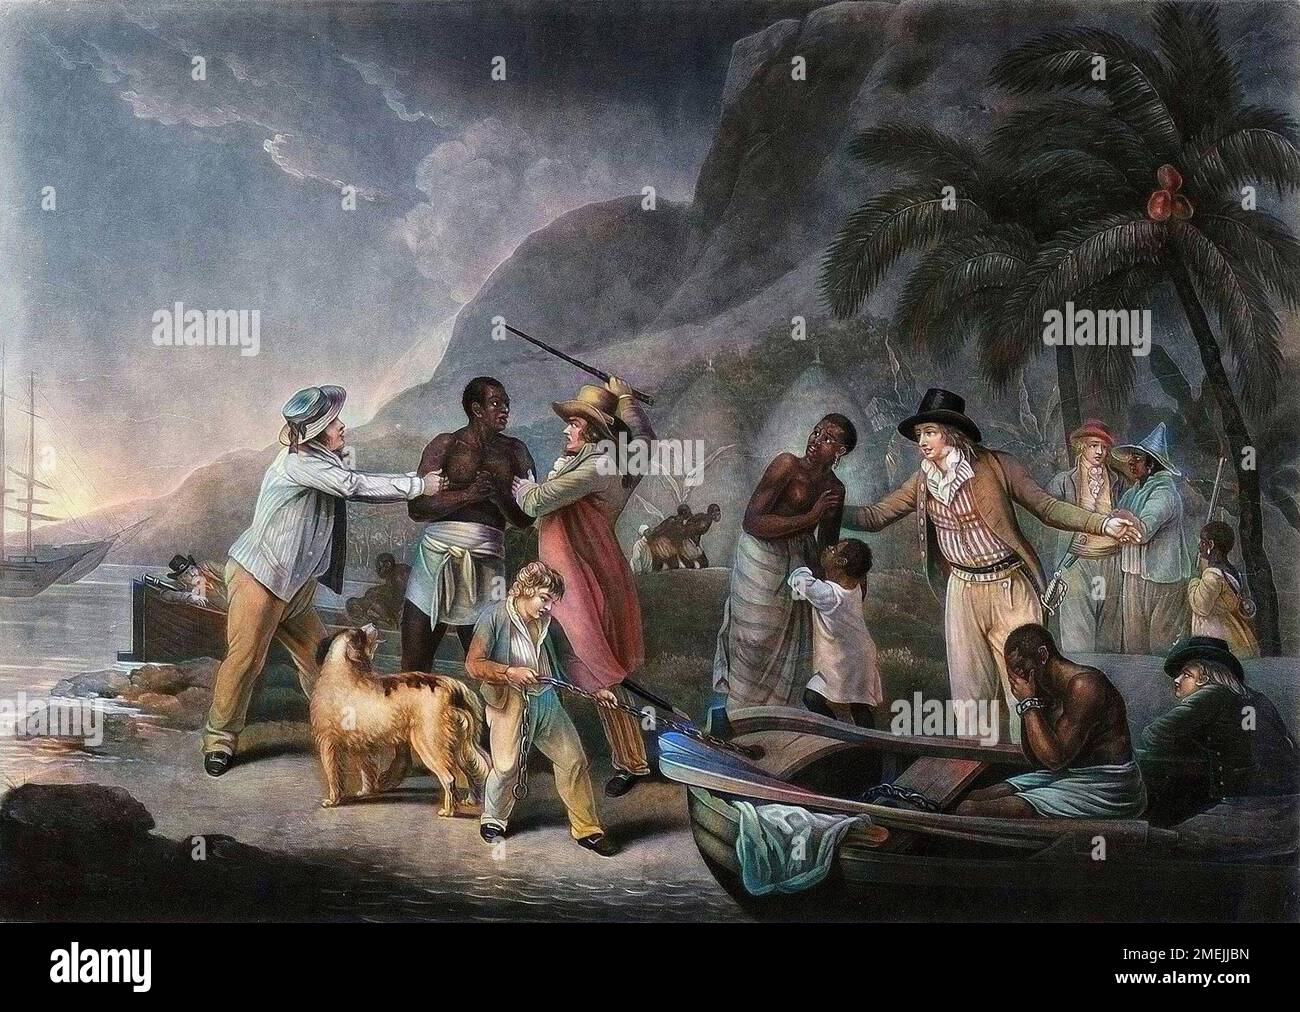 Traite des noirs. Un marchand d'esclaves tente de negocier un homme que se disputent deux proprietaires tandis que la femme et l'enfant de l'esclave sont mis a l'ecart. Gravure de John Raphael Smith, 1814 d'apres la peinture de George Morland (1763-1804) de 1788. Stock Photo